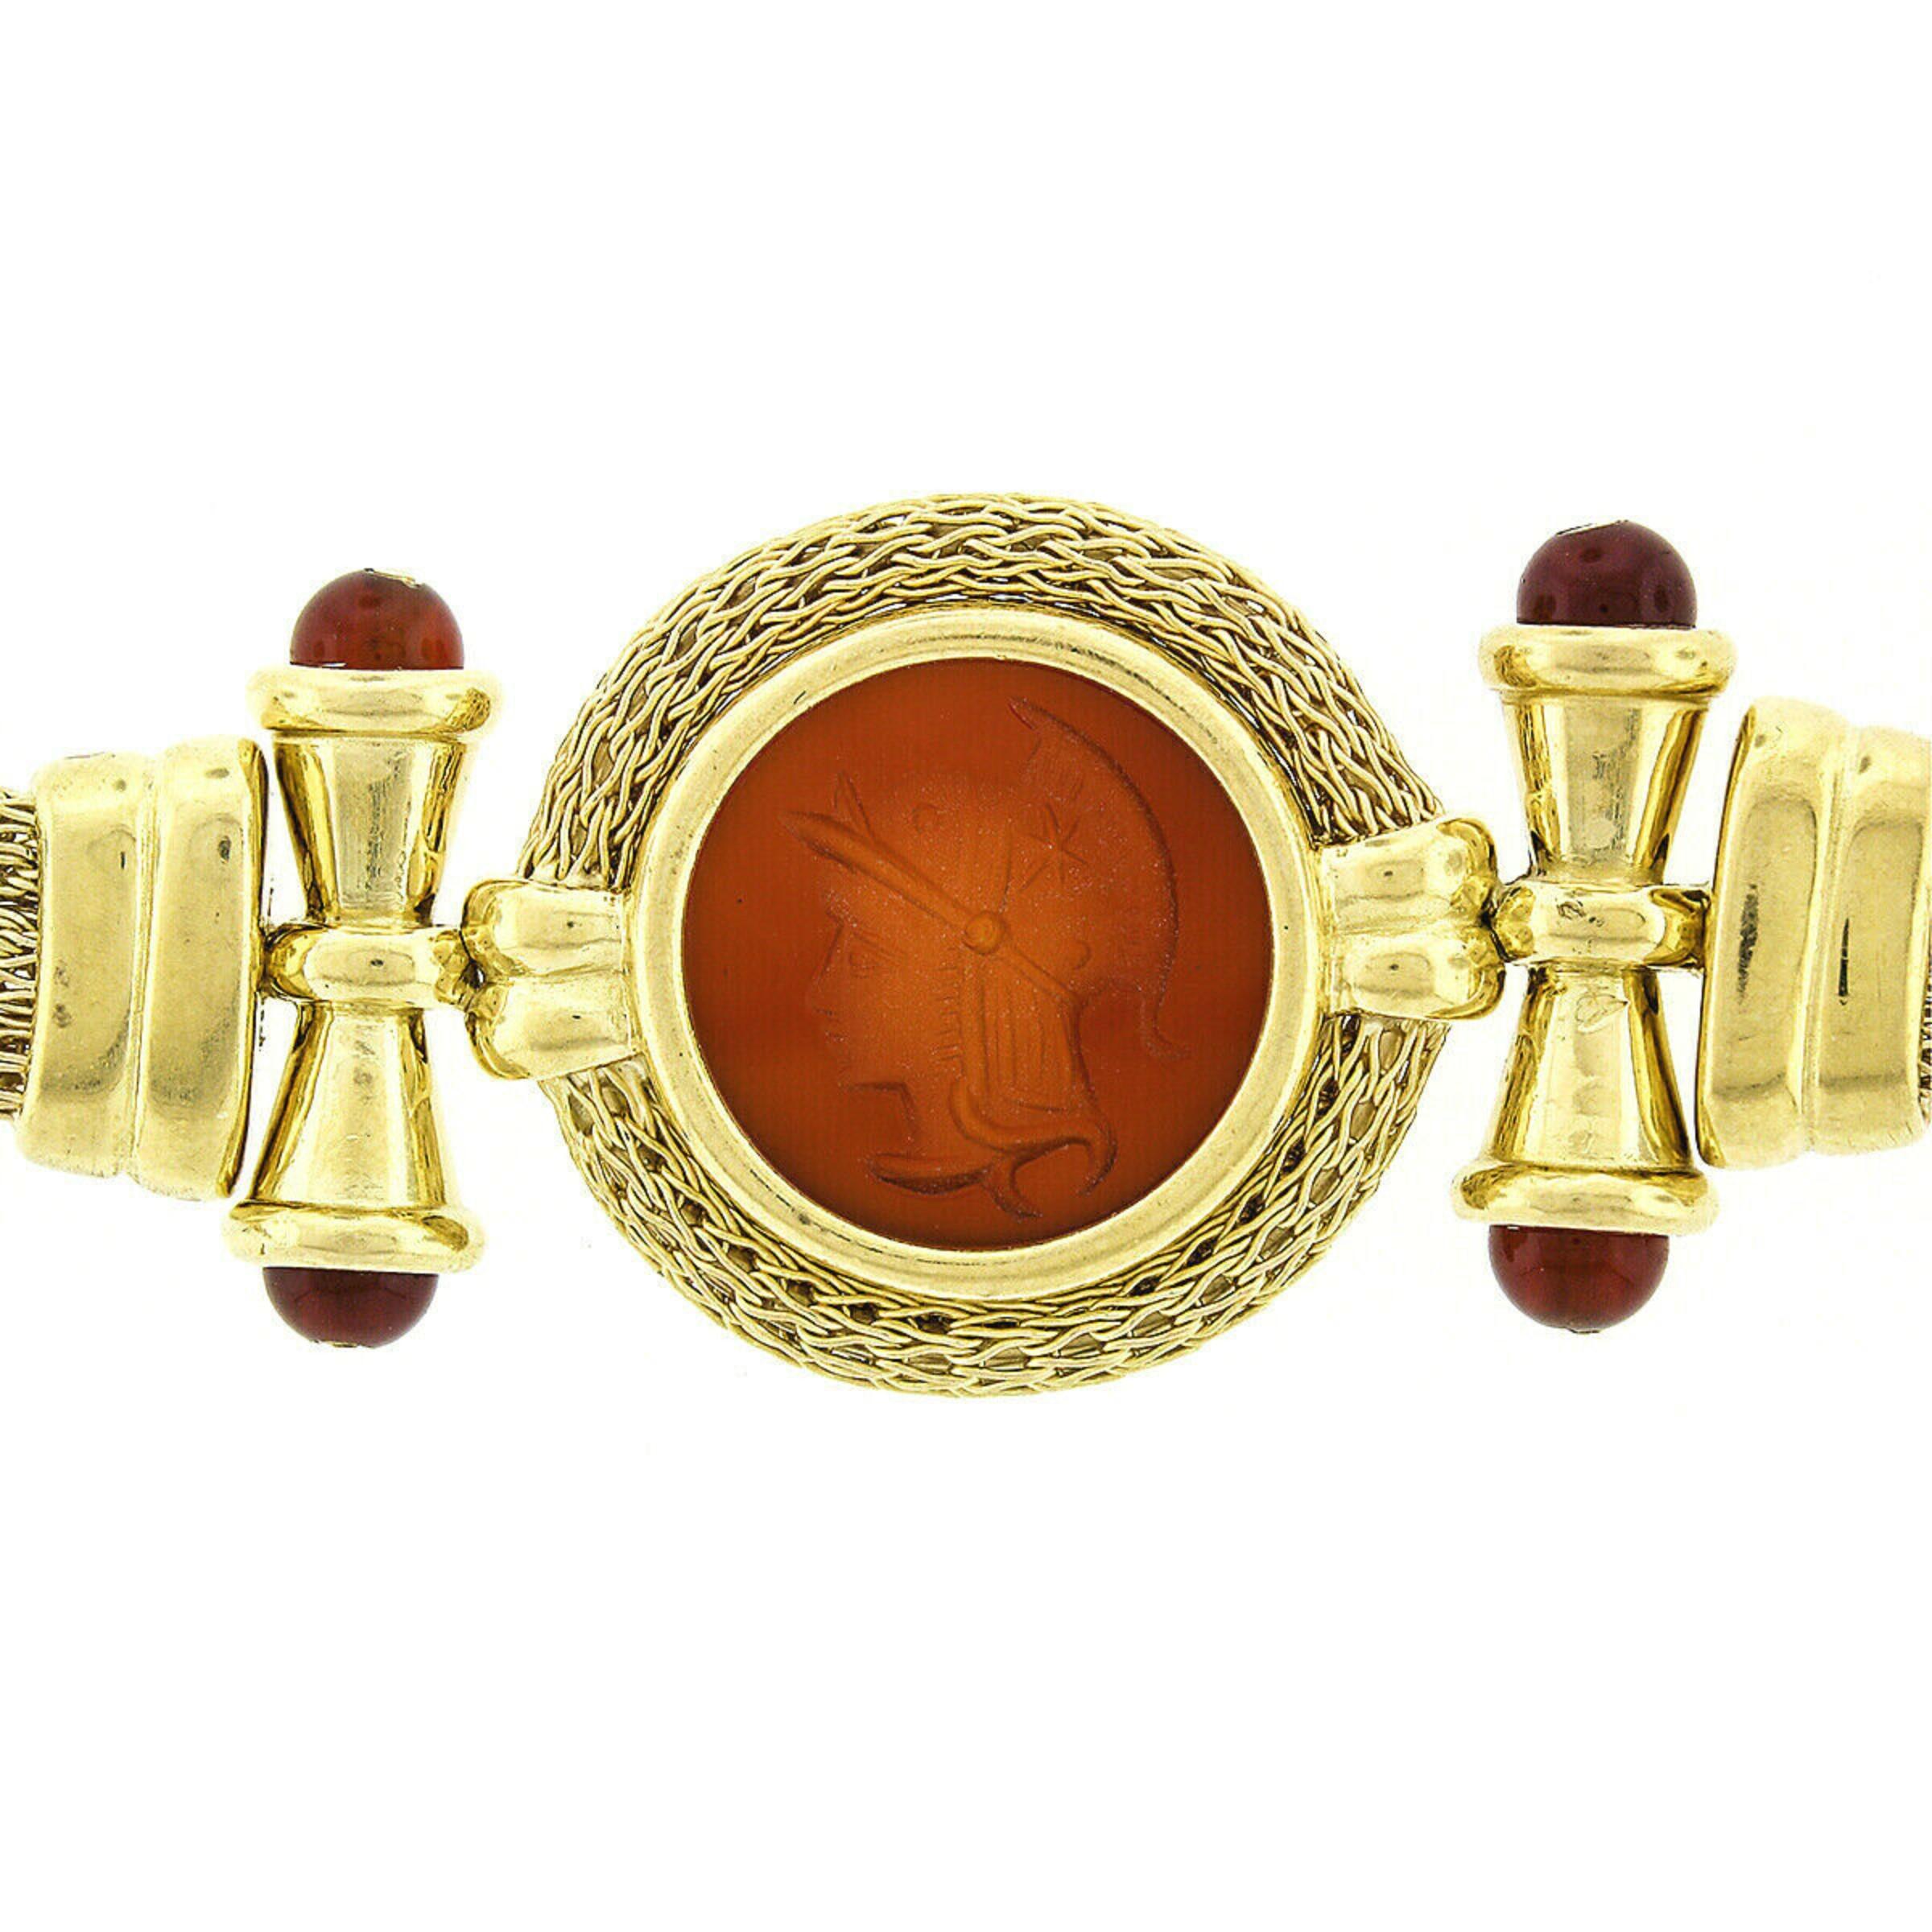 Nuovi Gioielli 18k Gold Mesh Carnelian Intaglio Necklace & Bracelet Suite Set For Sale 3